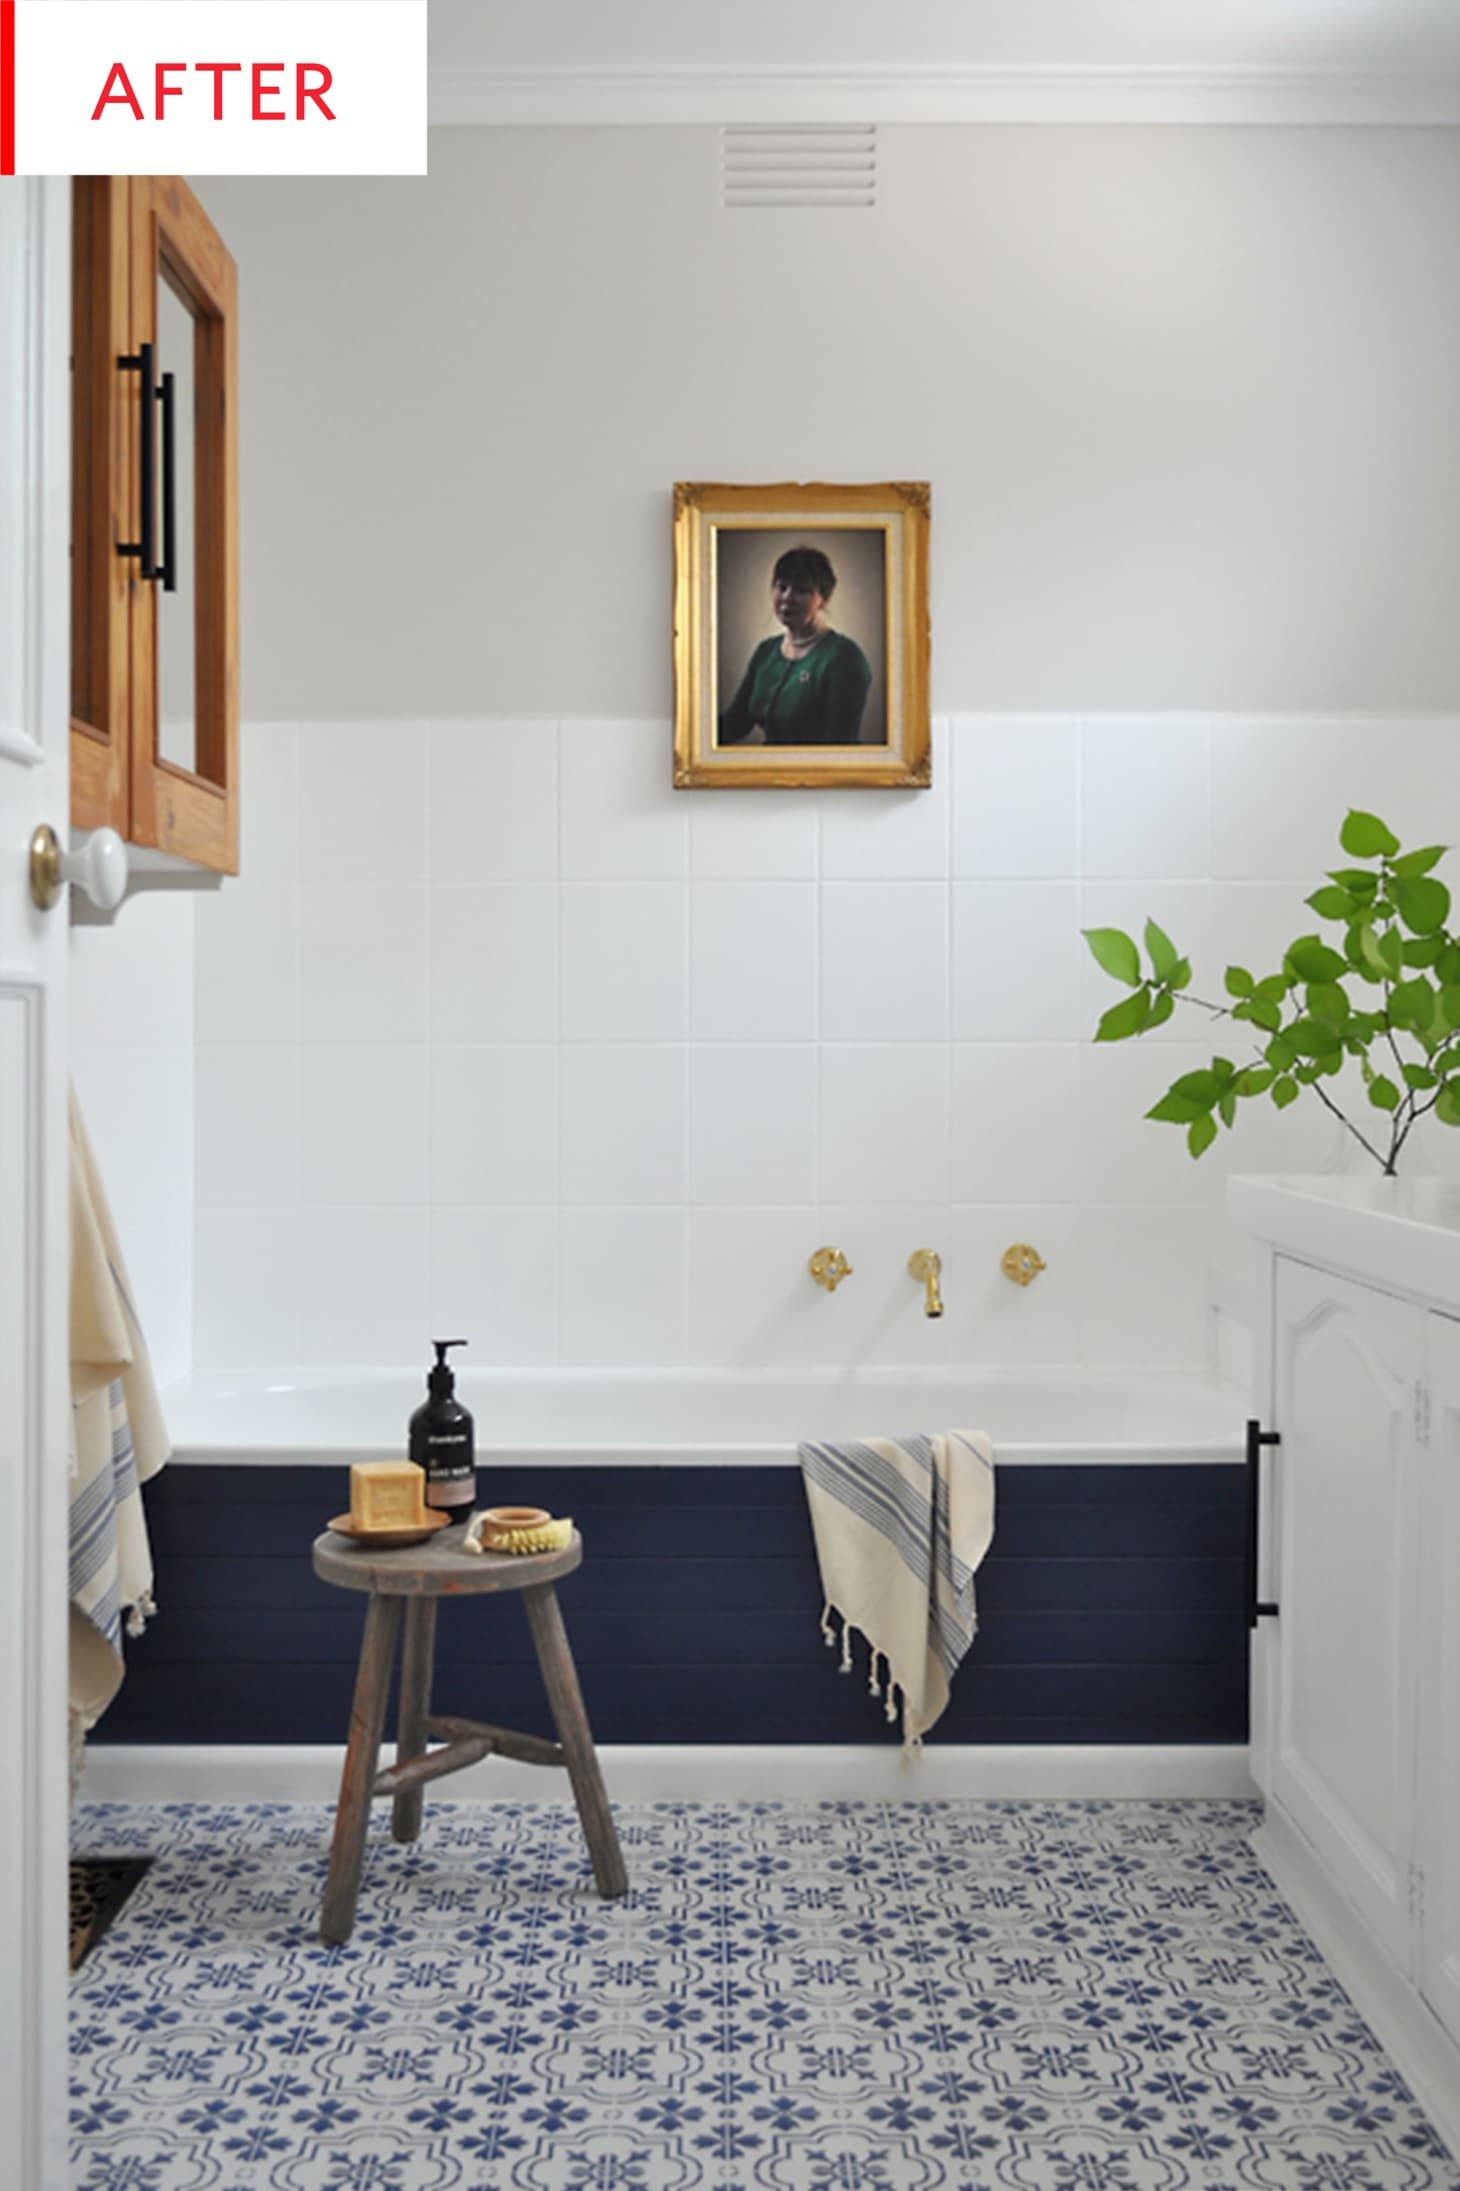 Repainting Bathroom Tiles Best Of Diy Bathroom Remodel Tile Paint before after